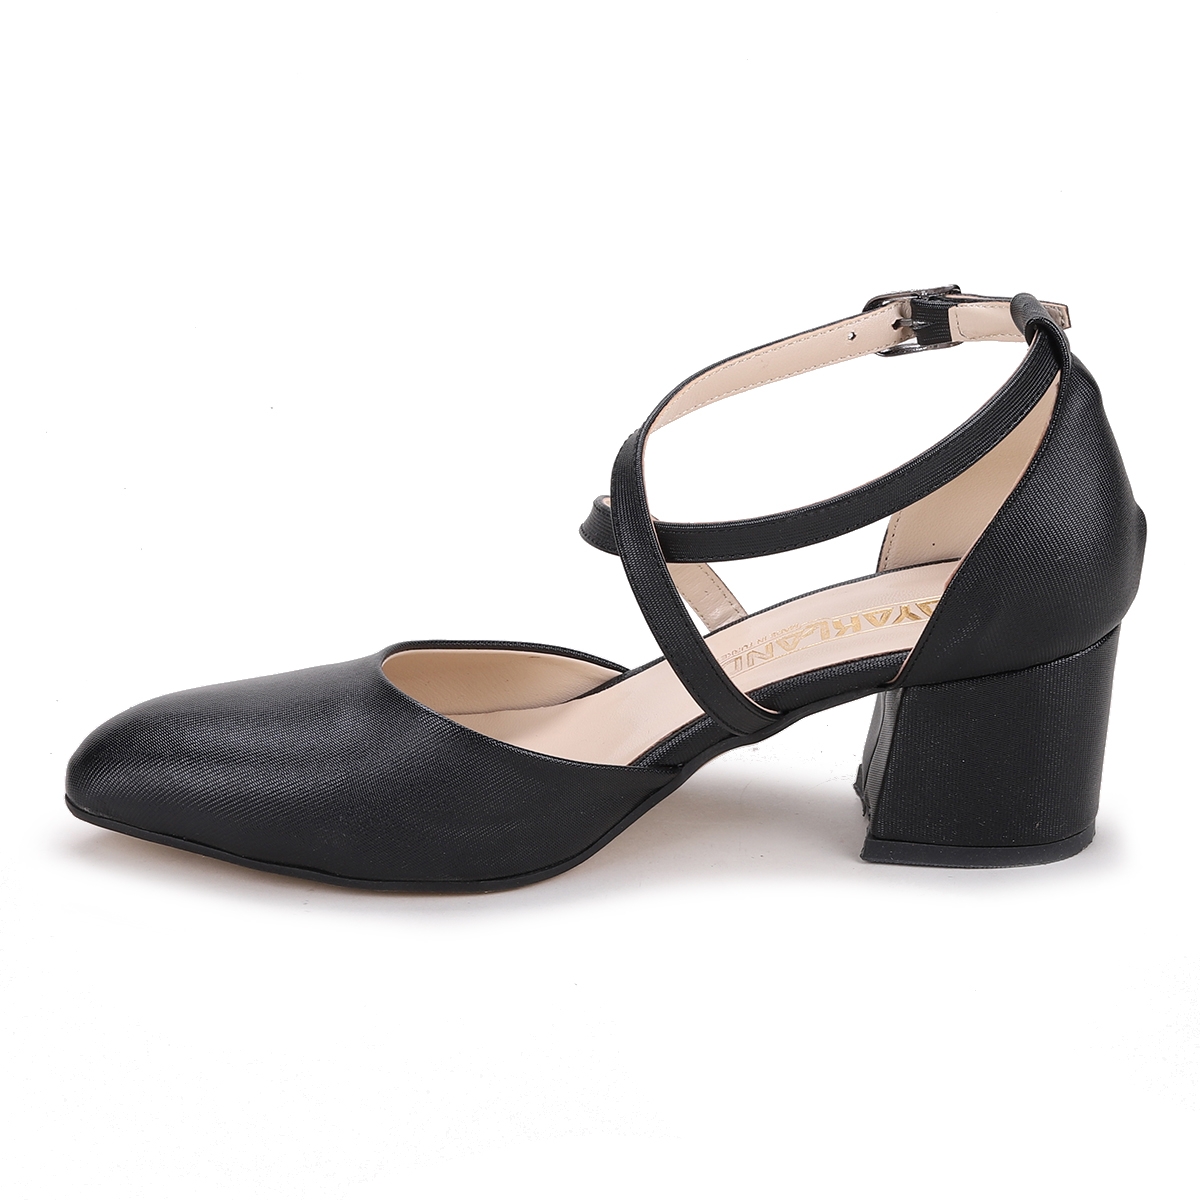 Flo Tier 1990.120 Parlak 5 Cm Topuk Kadın Sandalet Ayakkabı Siyah. 5